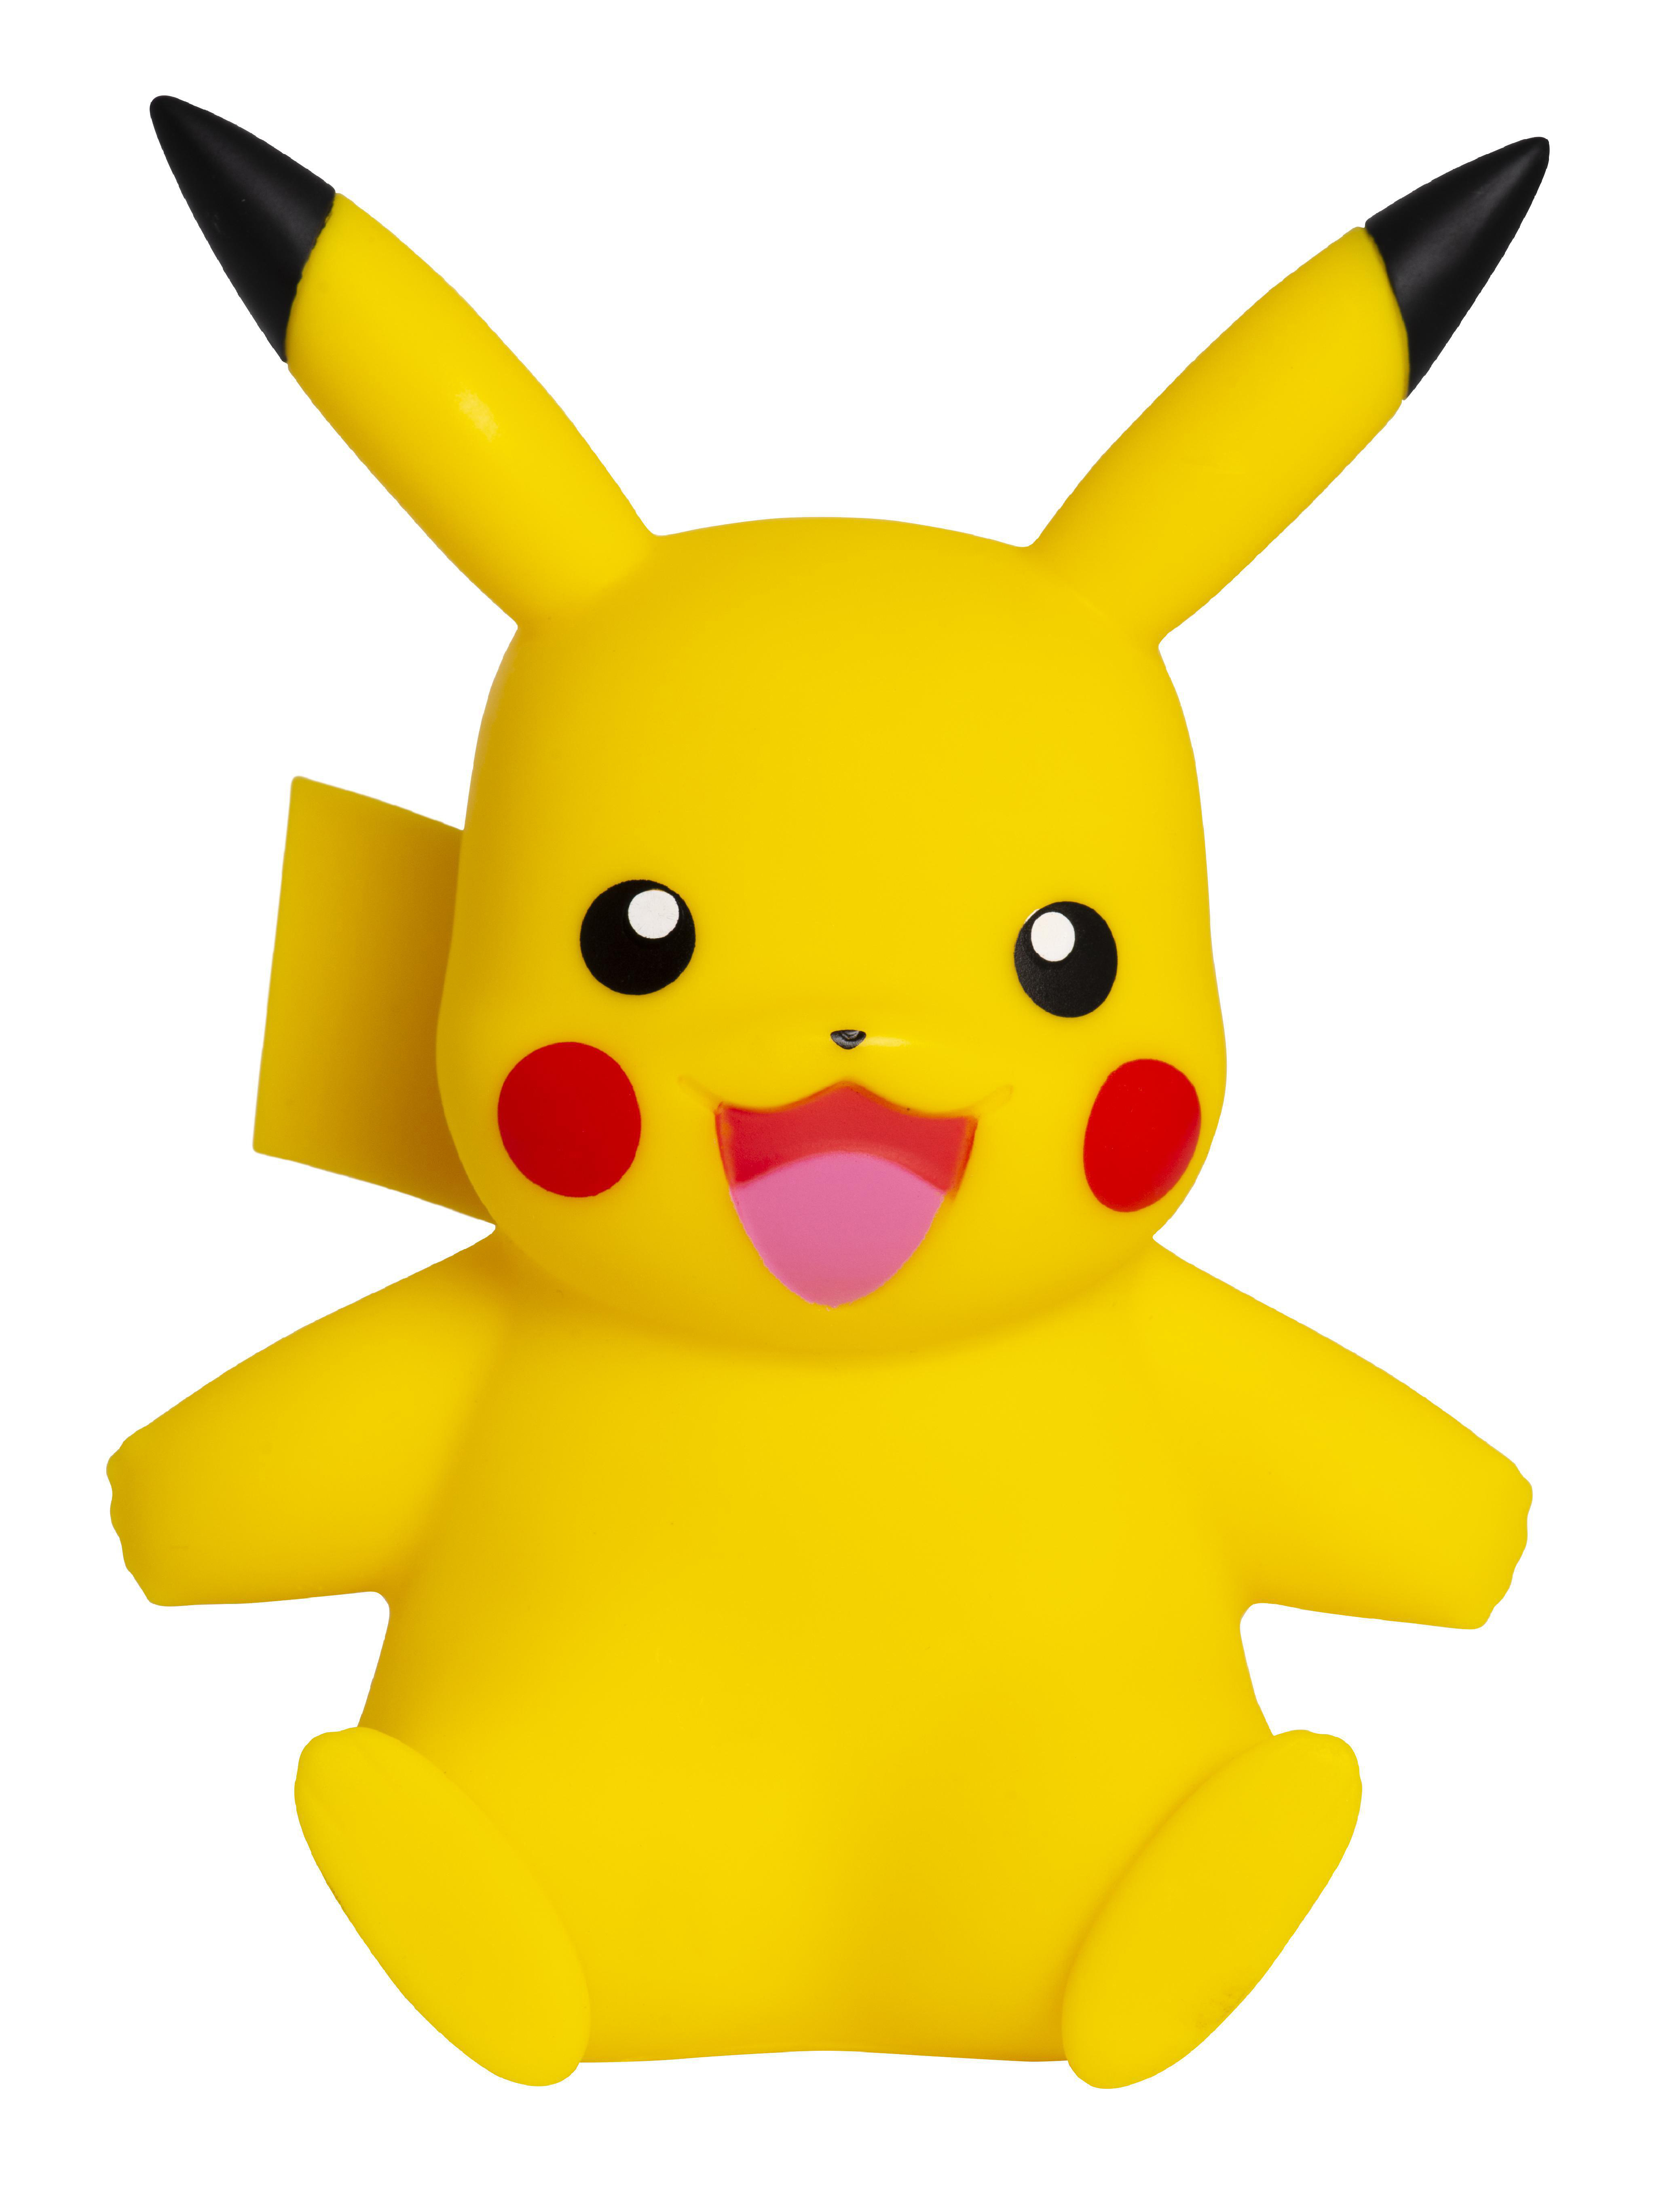 Figur Pokémon JAZWARES Pikachu Vinyl